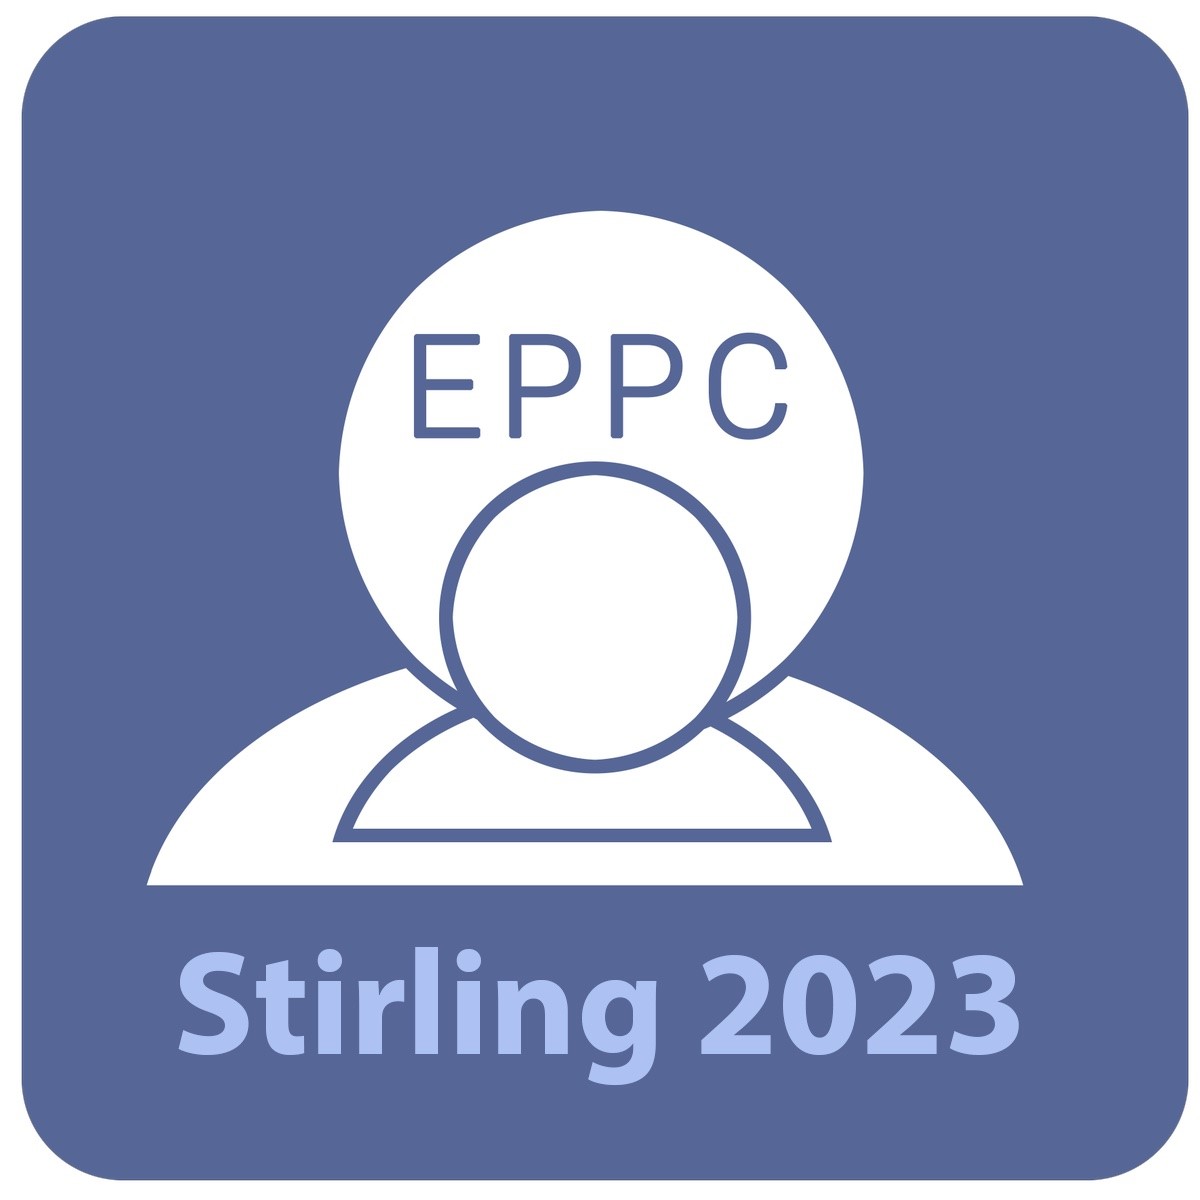 EPPC 2023